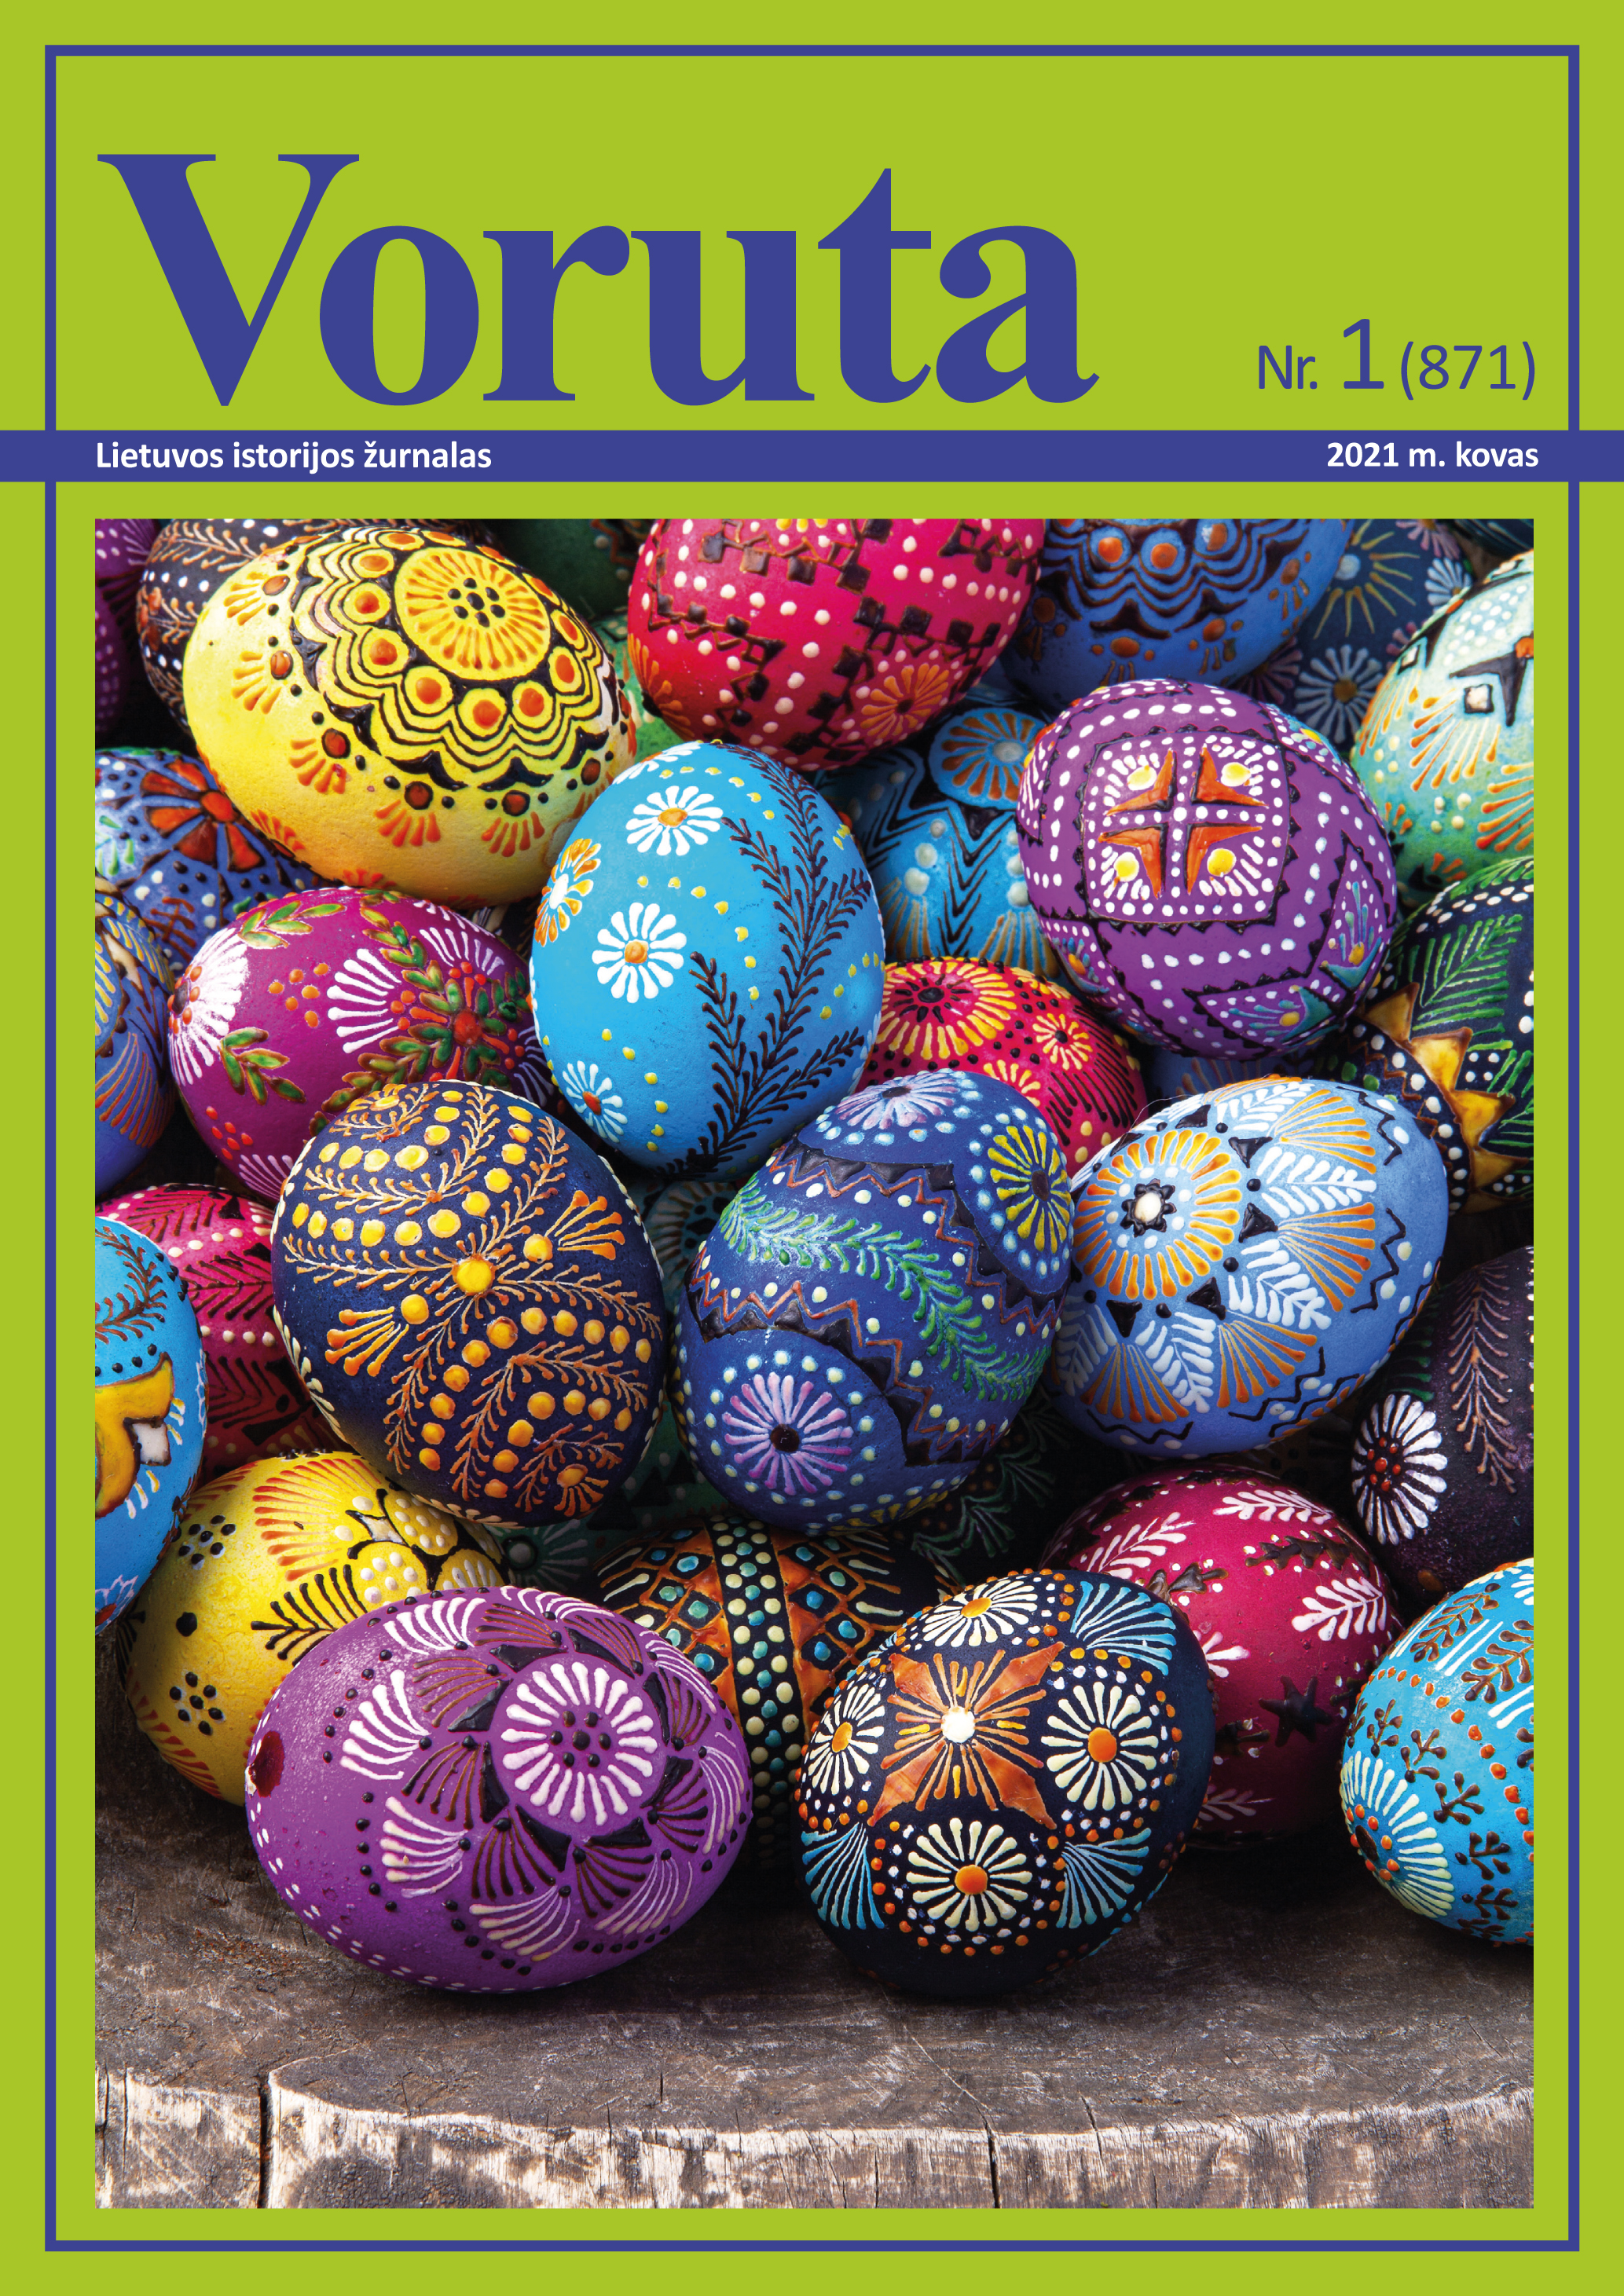 Maloniai kviečiame skaityti pirmąjį 2021 m.  Lietuvos istorijos žurnalo „Voruta“ numerį